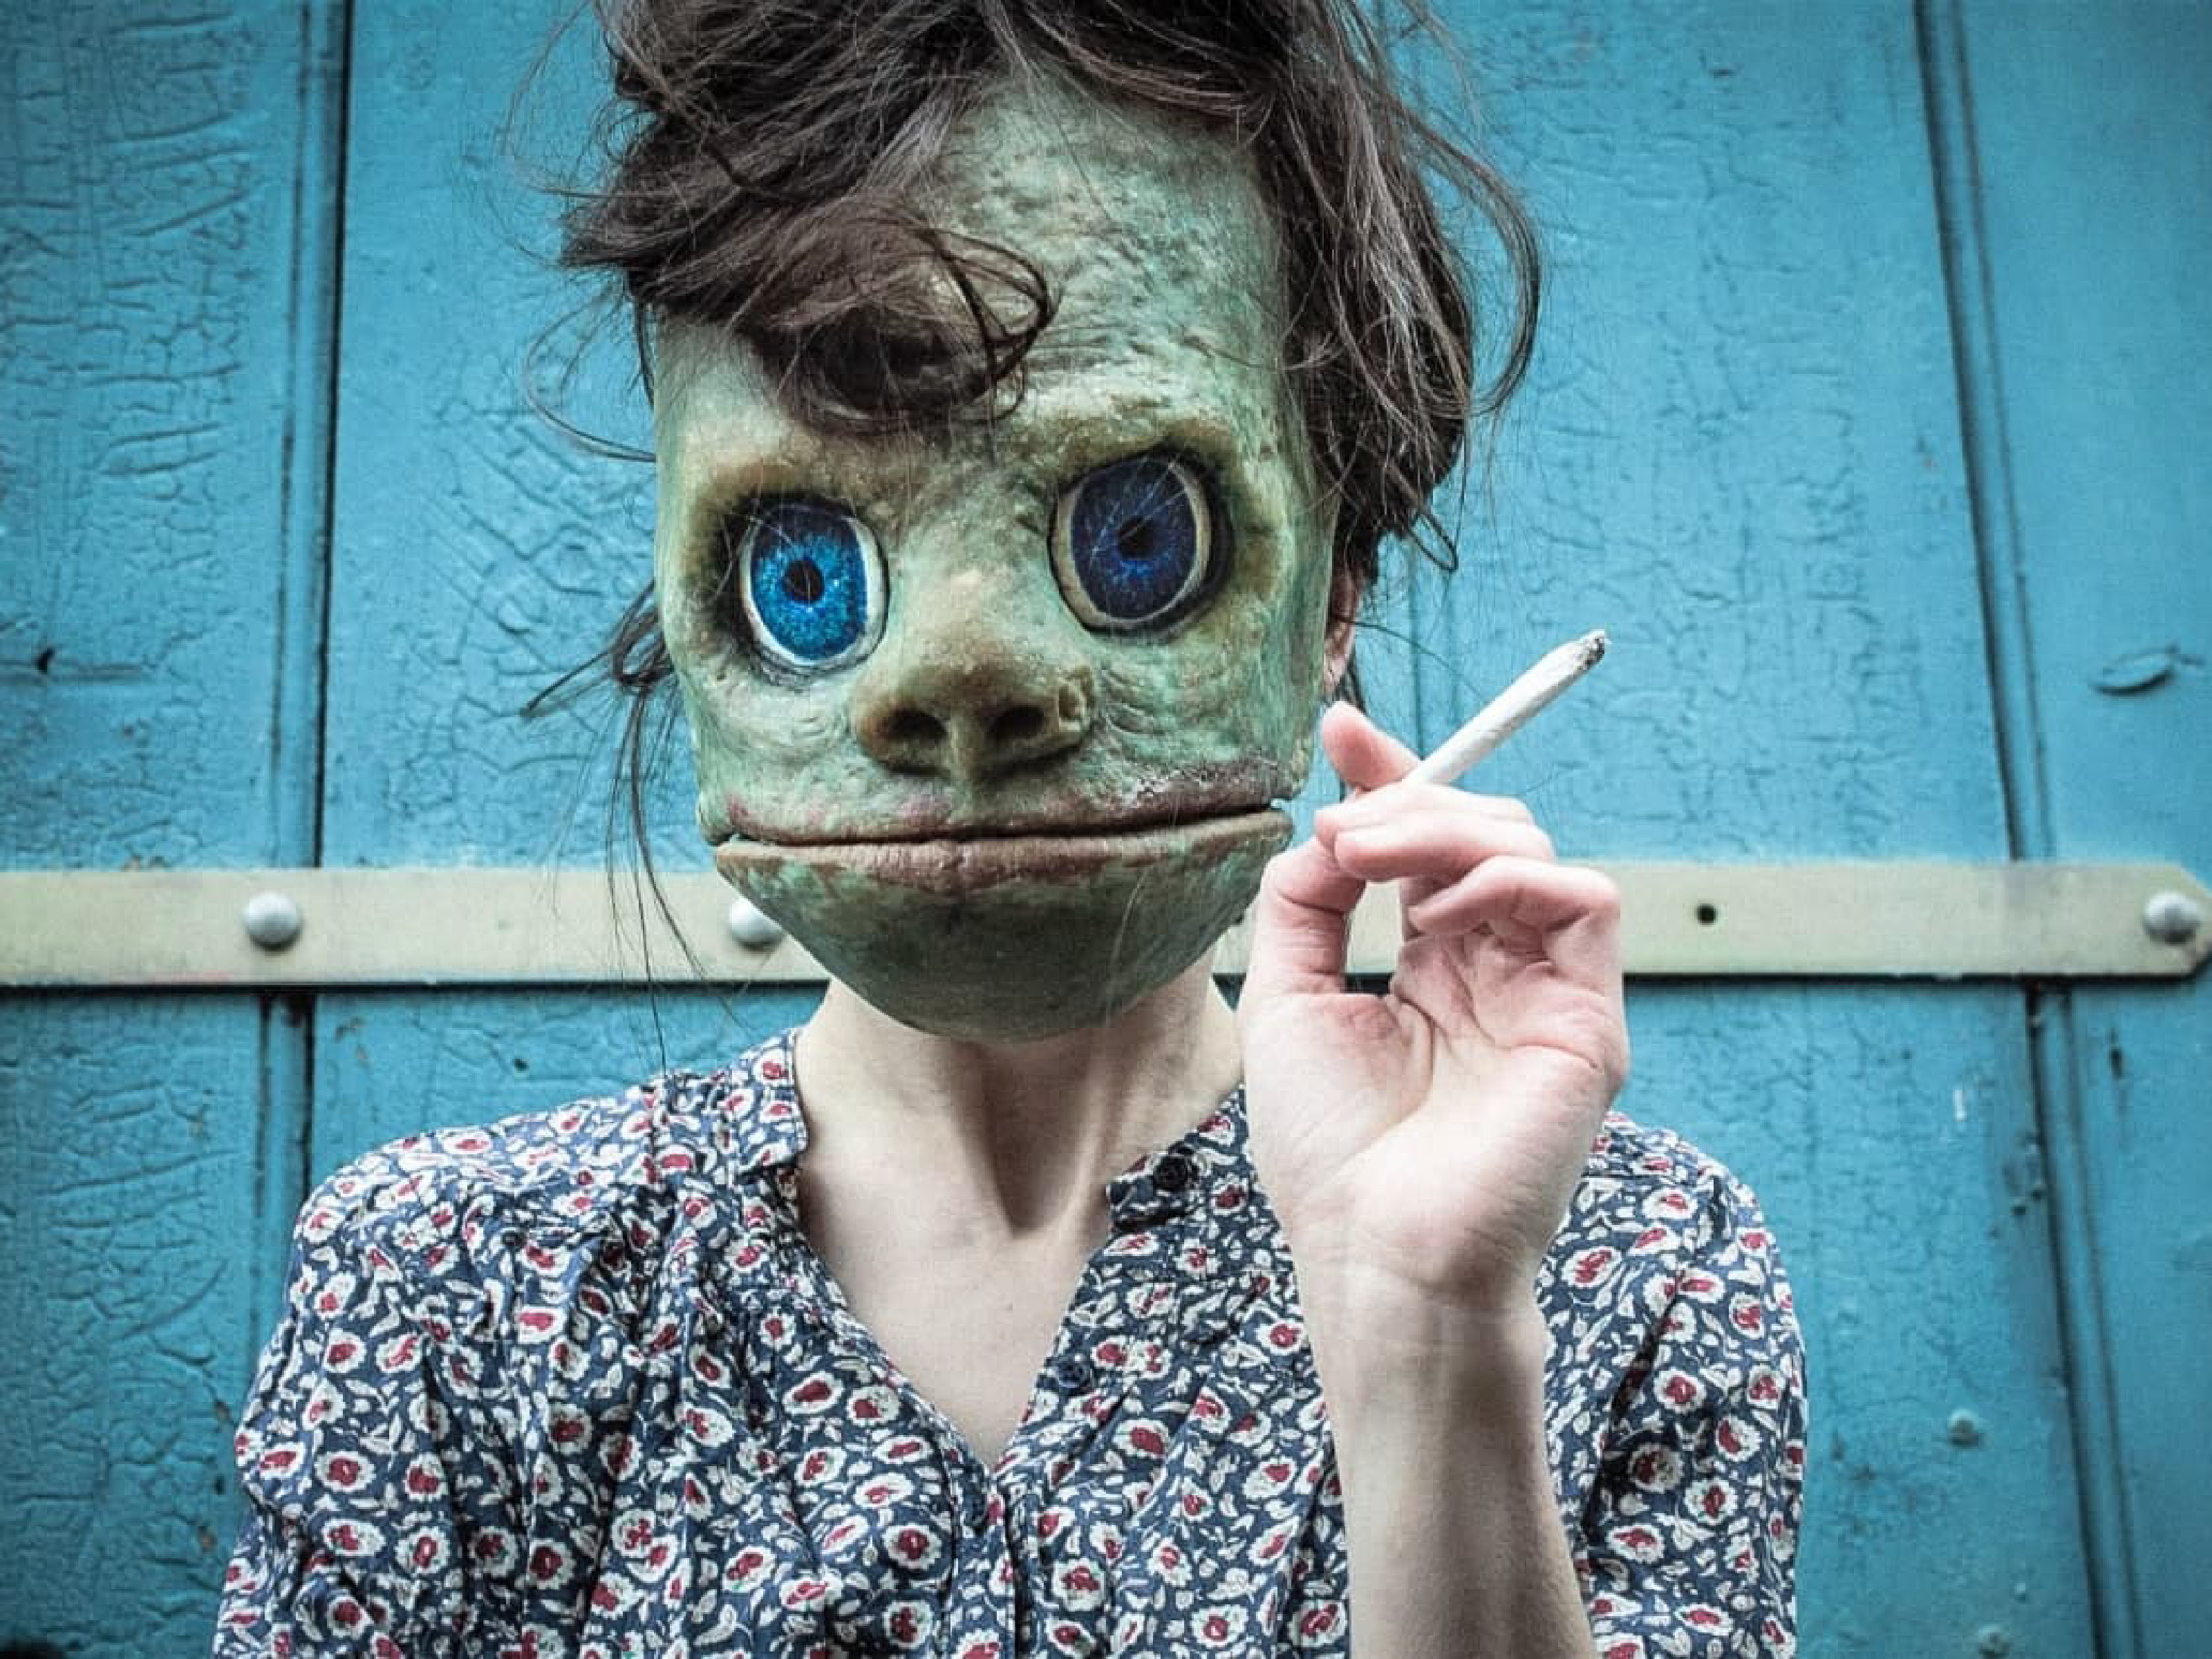 Eine Frau in Blümchenkleid trägt eine grüne Maske mit breitem Mund und großen, blauen Augen. Sie hält eine Zigarette in der Hand. Im Hintergrund ist eine Wand aus hellblauen Latten zu erkennen.